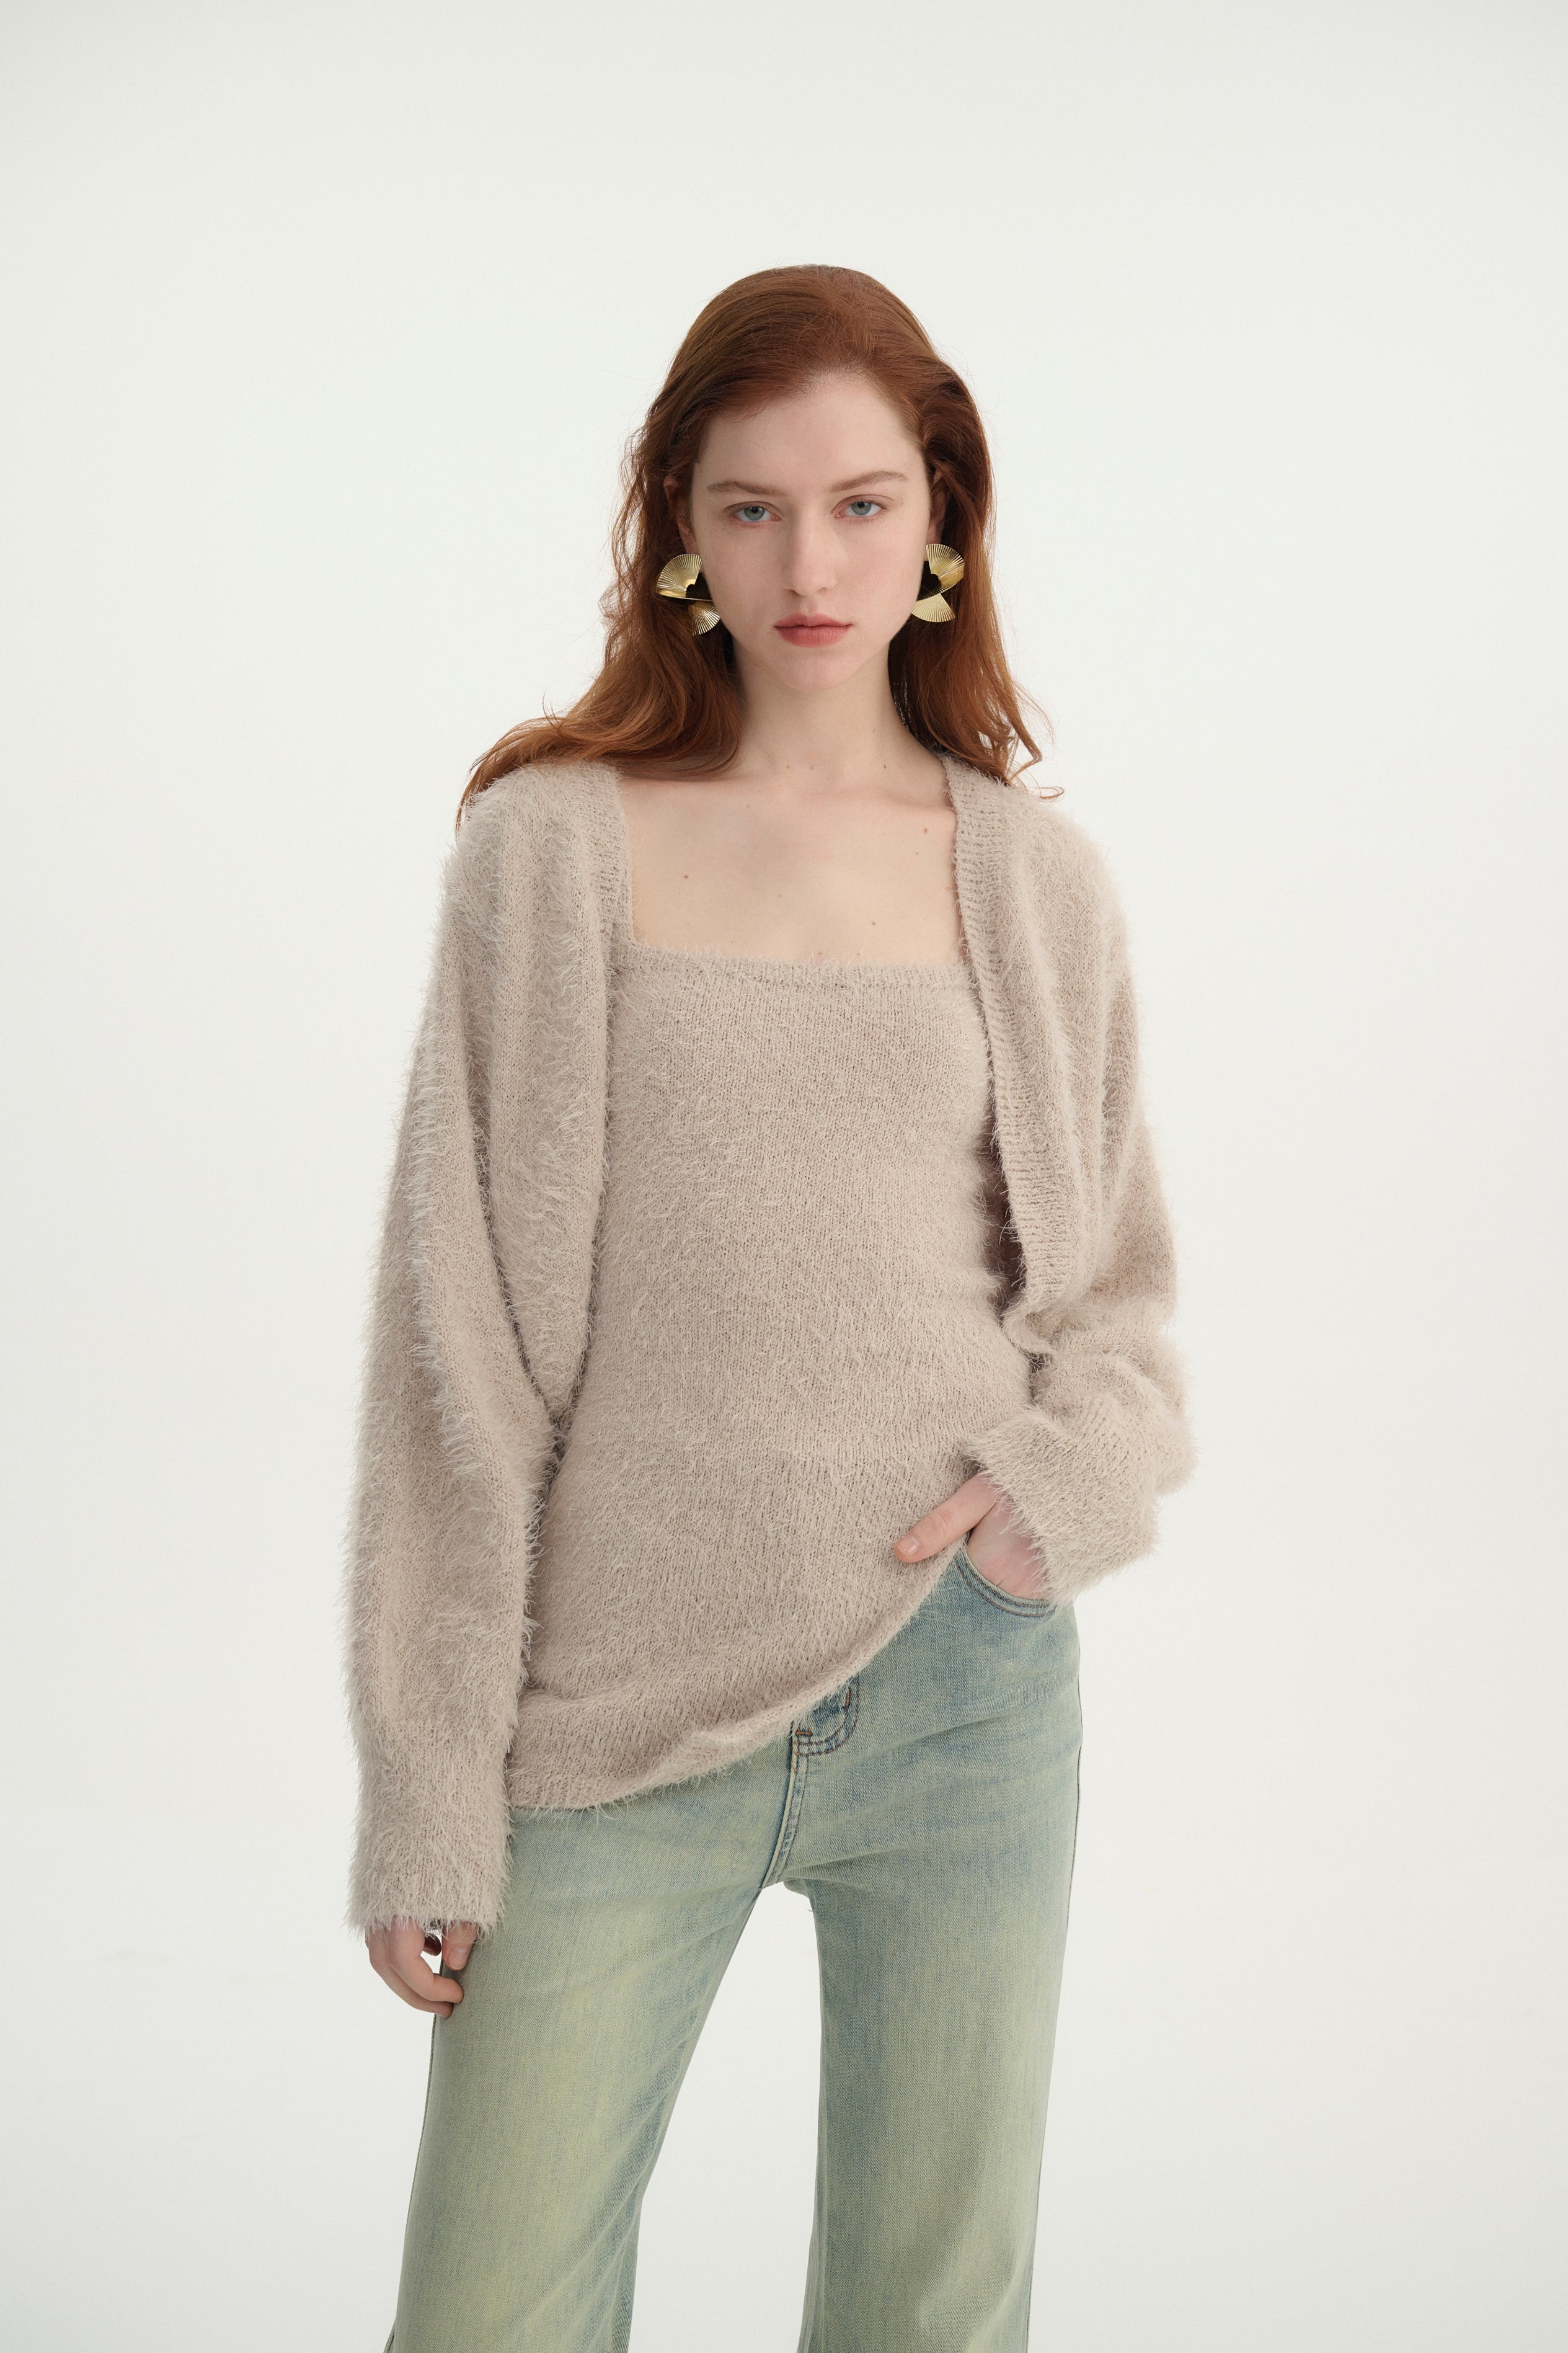 Fuzzy knit top & cardigan